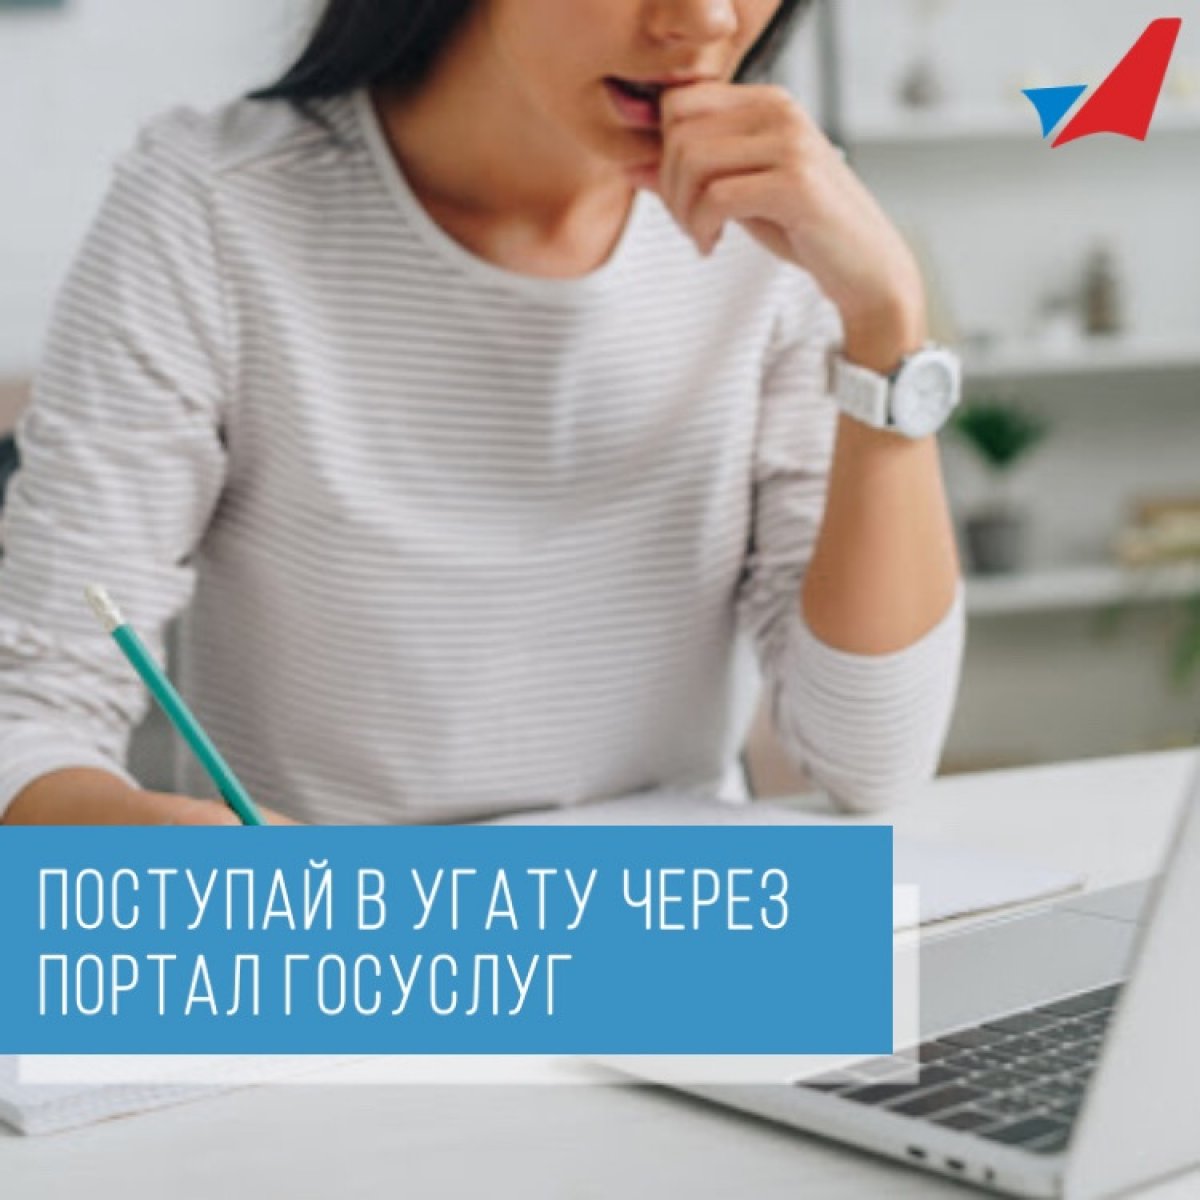 УГАТУ стал первым в Башкирии вузом, который принимает документы от абитуриентов в онлайн ⚡️